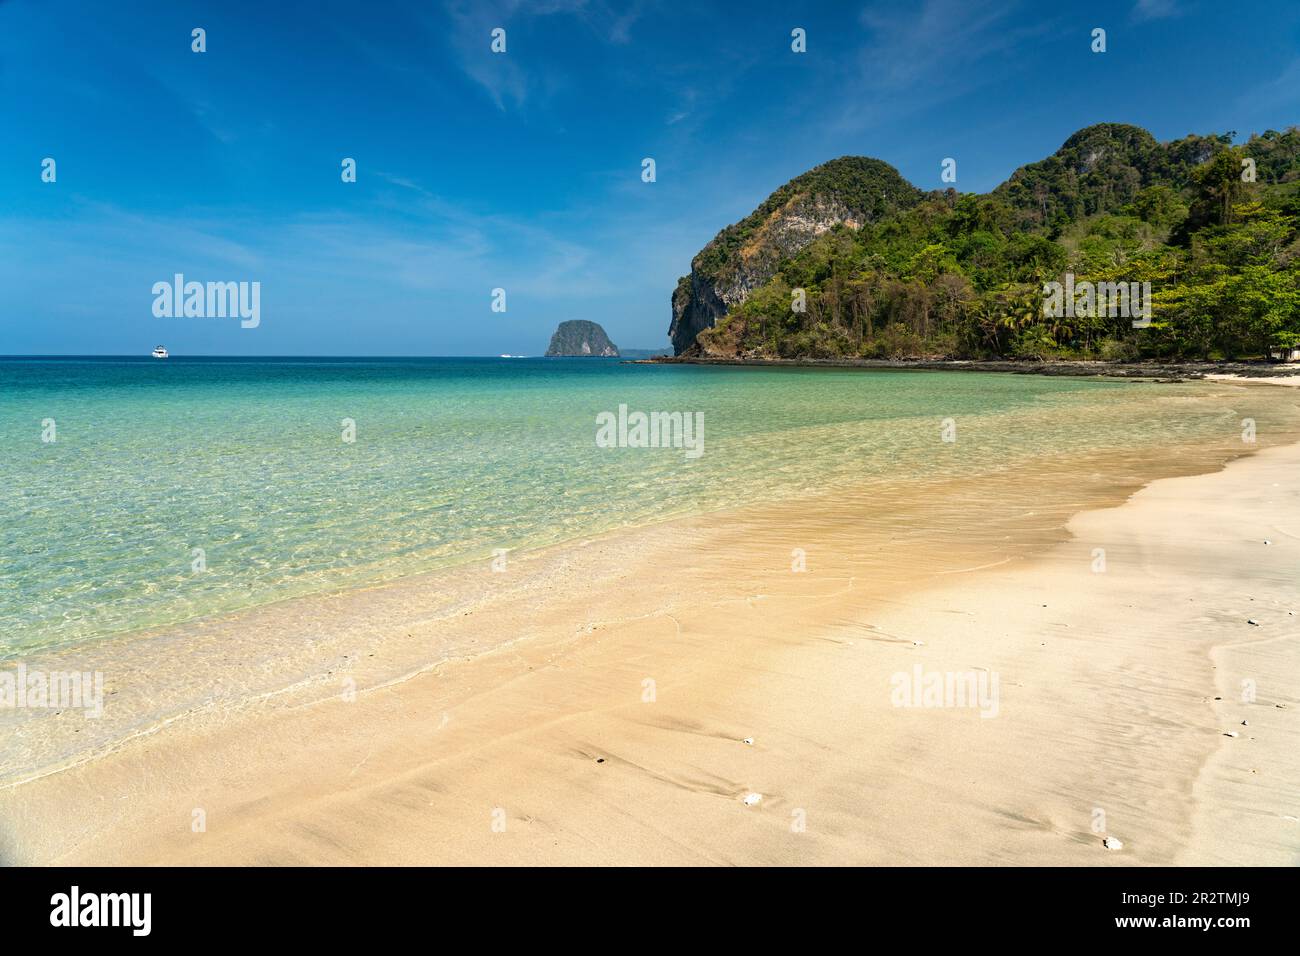 Am Strand Farang oder Charlie Beach auf der Insel Koh Mook in der Andamanensee, Thailand, Asien   |   Farang or Charlie Beach on Ko Mook, island in th Stock Photo